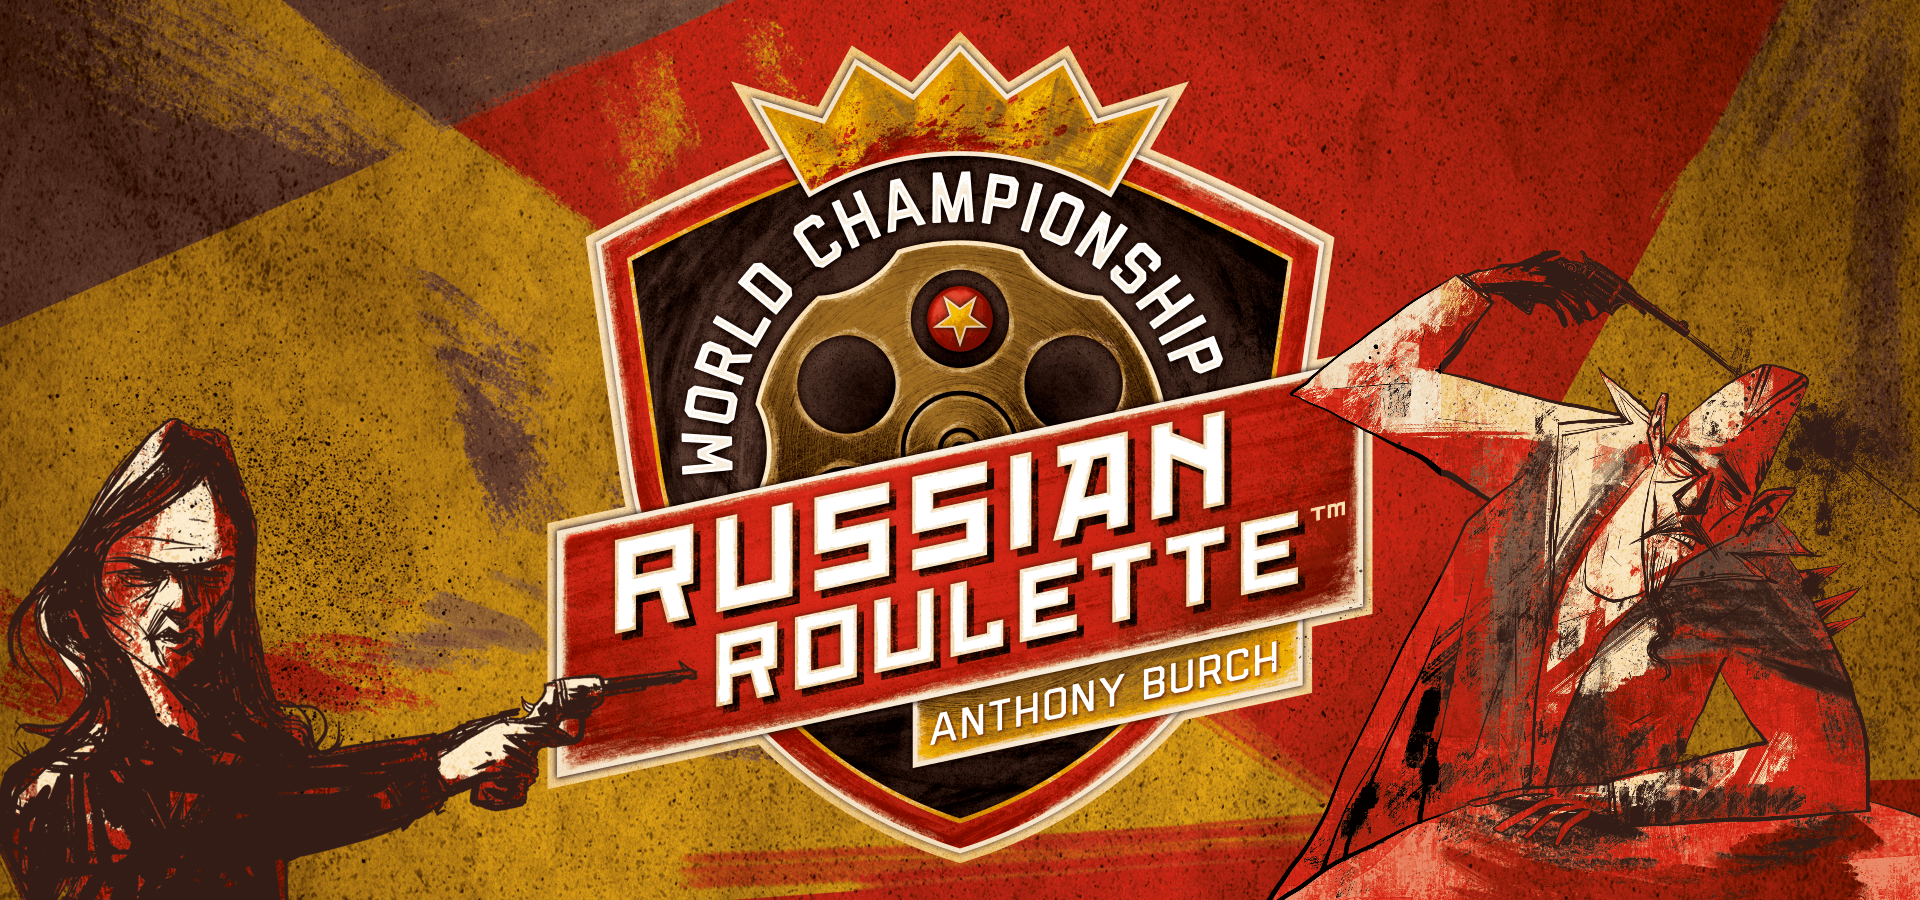 Buy World Championship Russian Roulette - Igiari - Board games